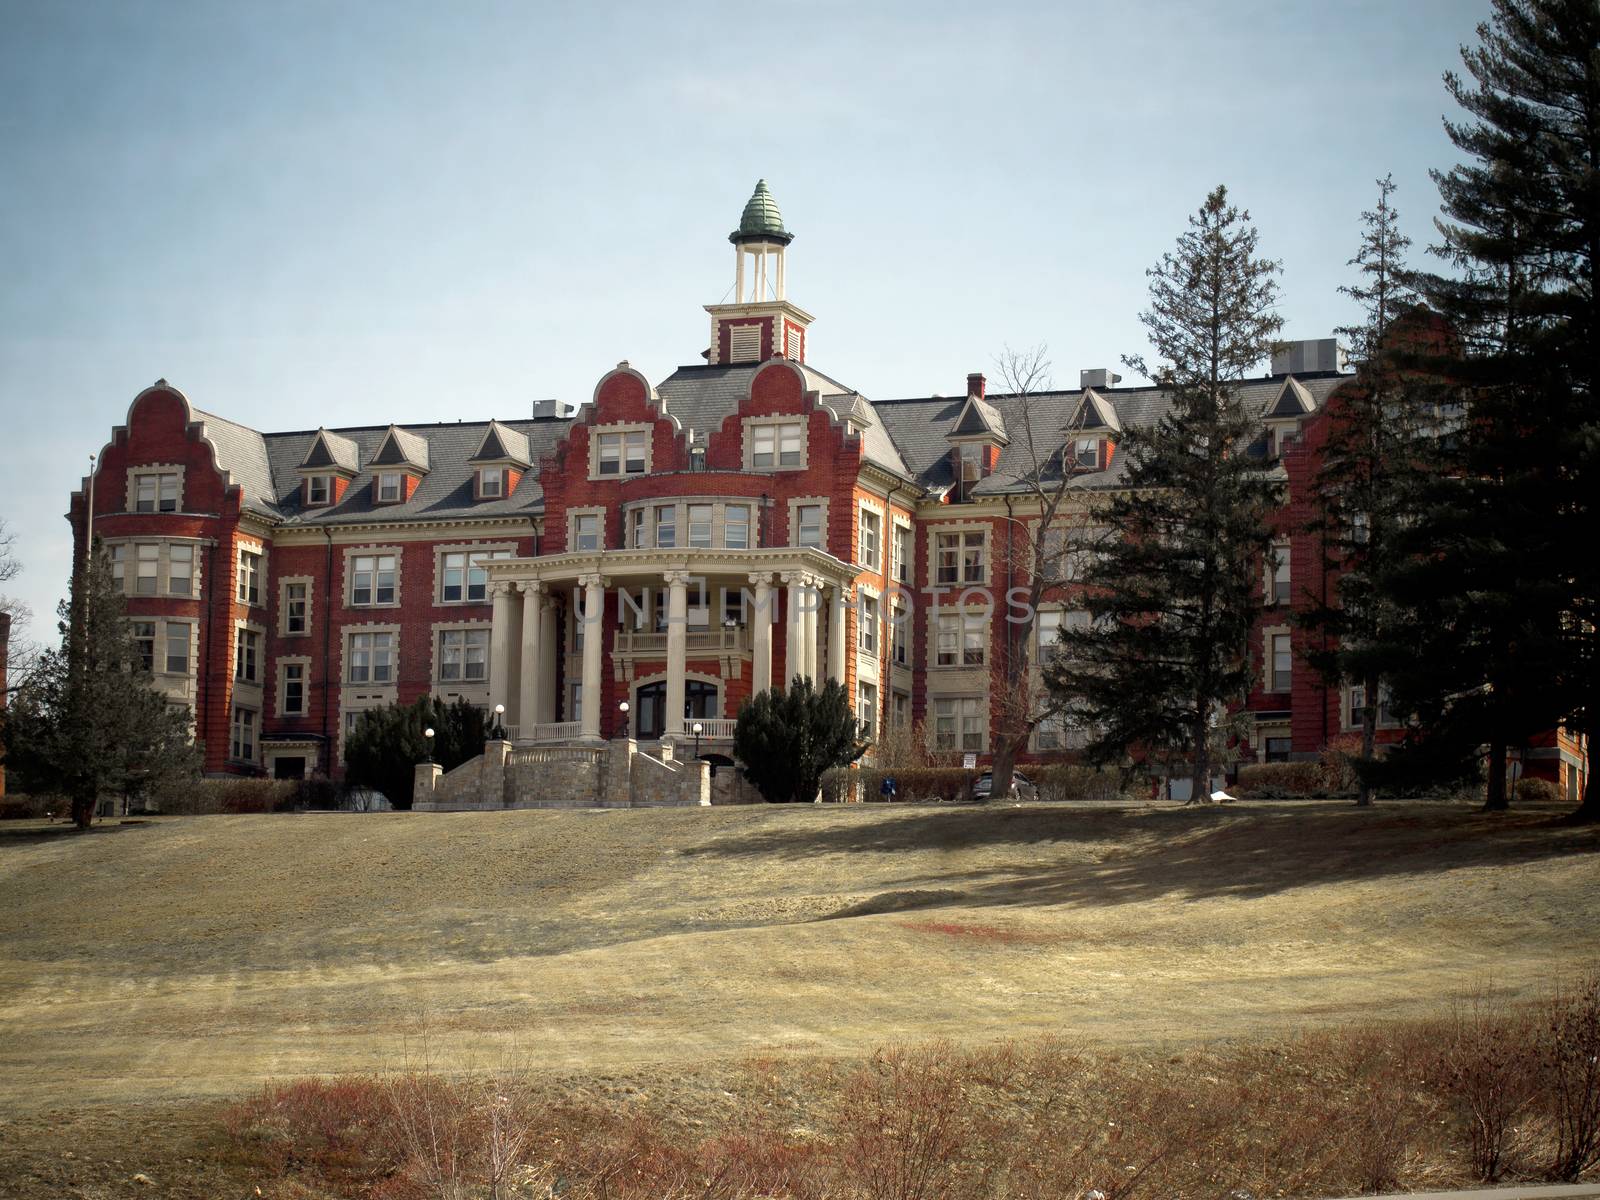 Mount St Mary's Manor in Hooksett New Hampshire by NikkiGensert